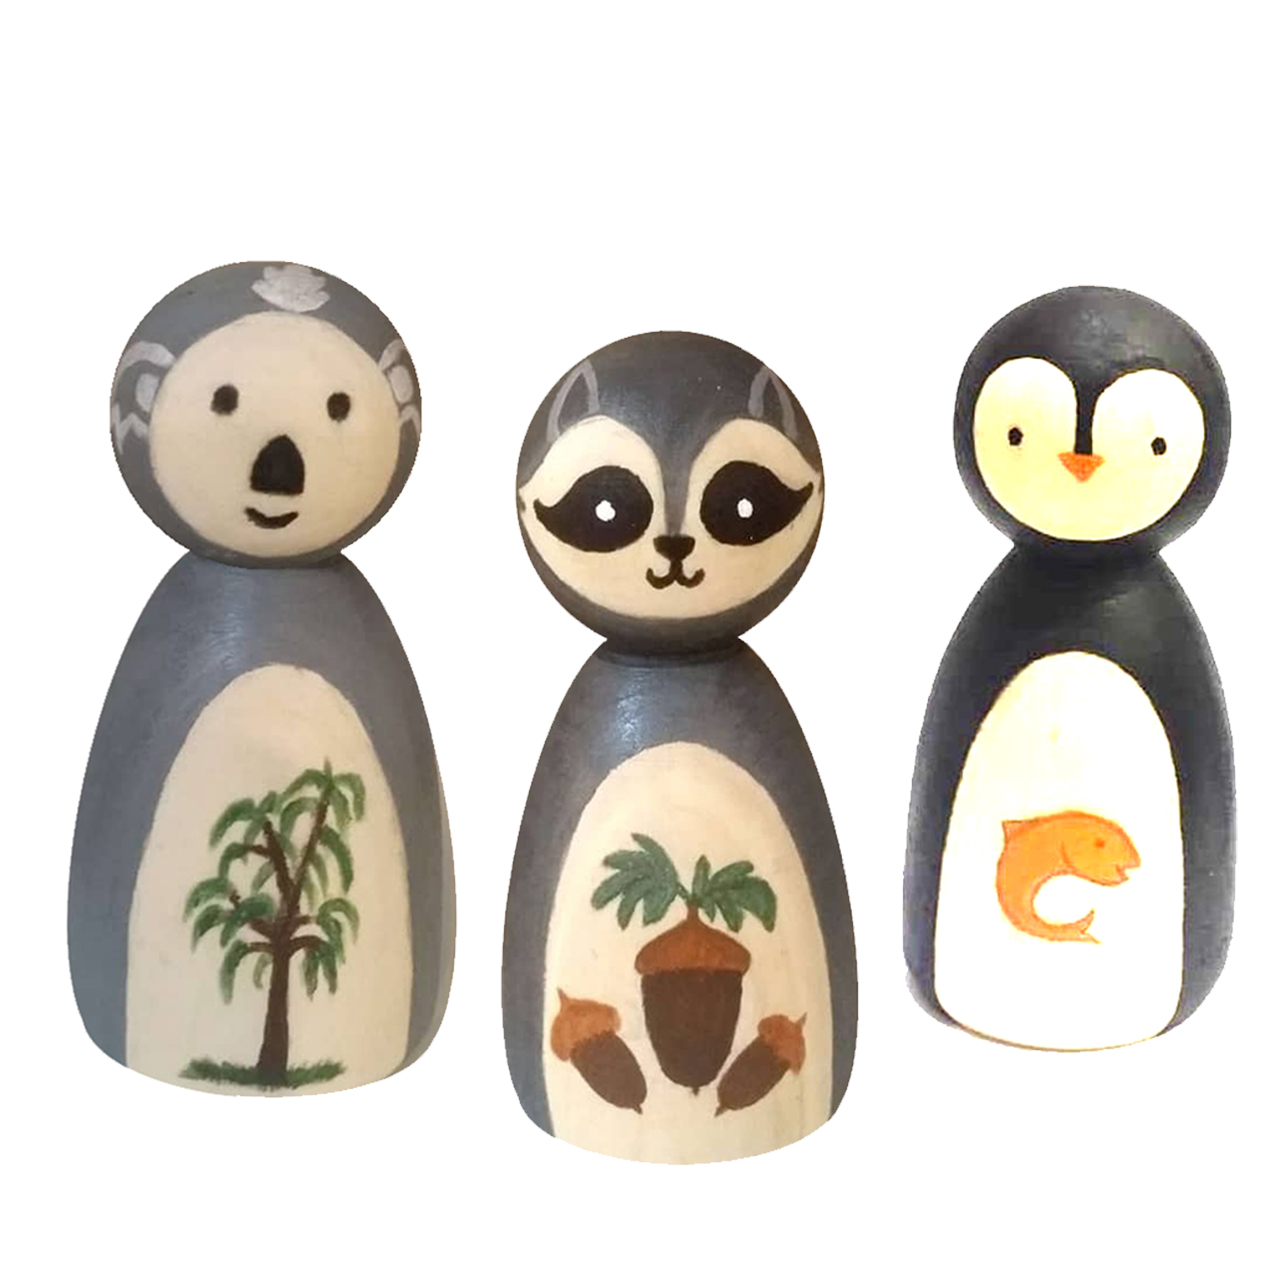 عروسک چوبی طرح پنگوئن و کوالا و راکون کد 03dprk مجموعه 3 عددی